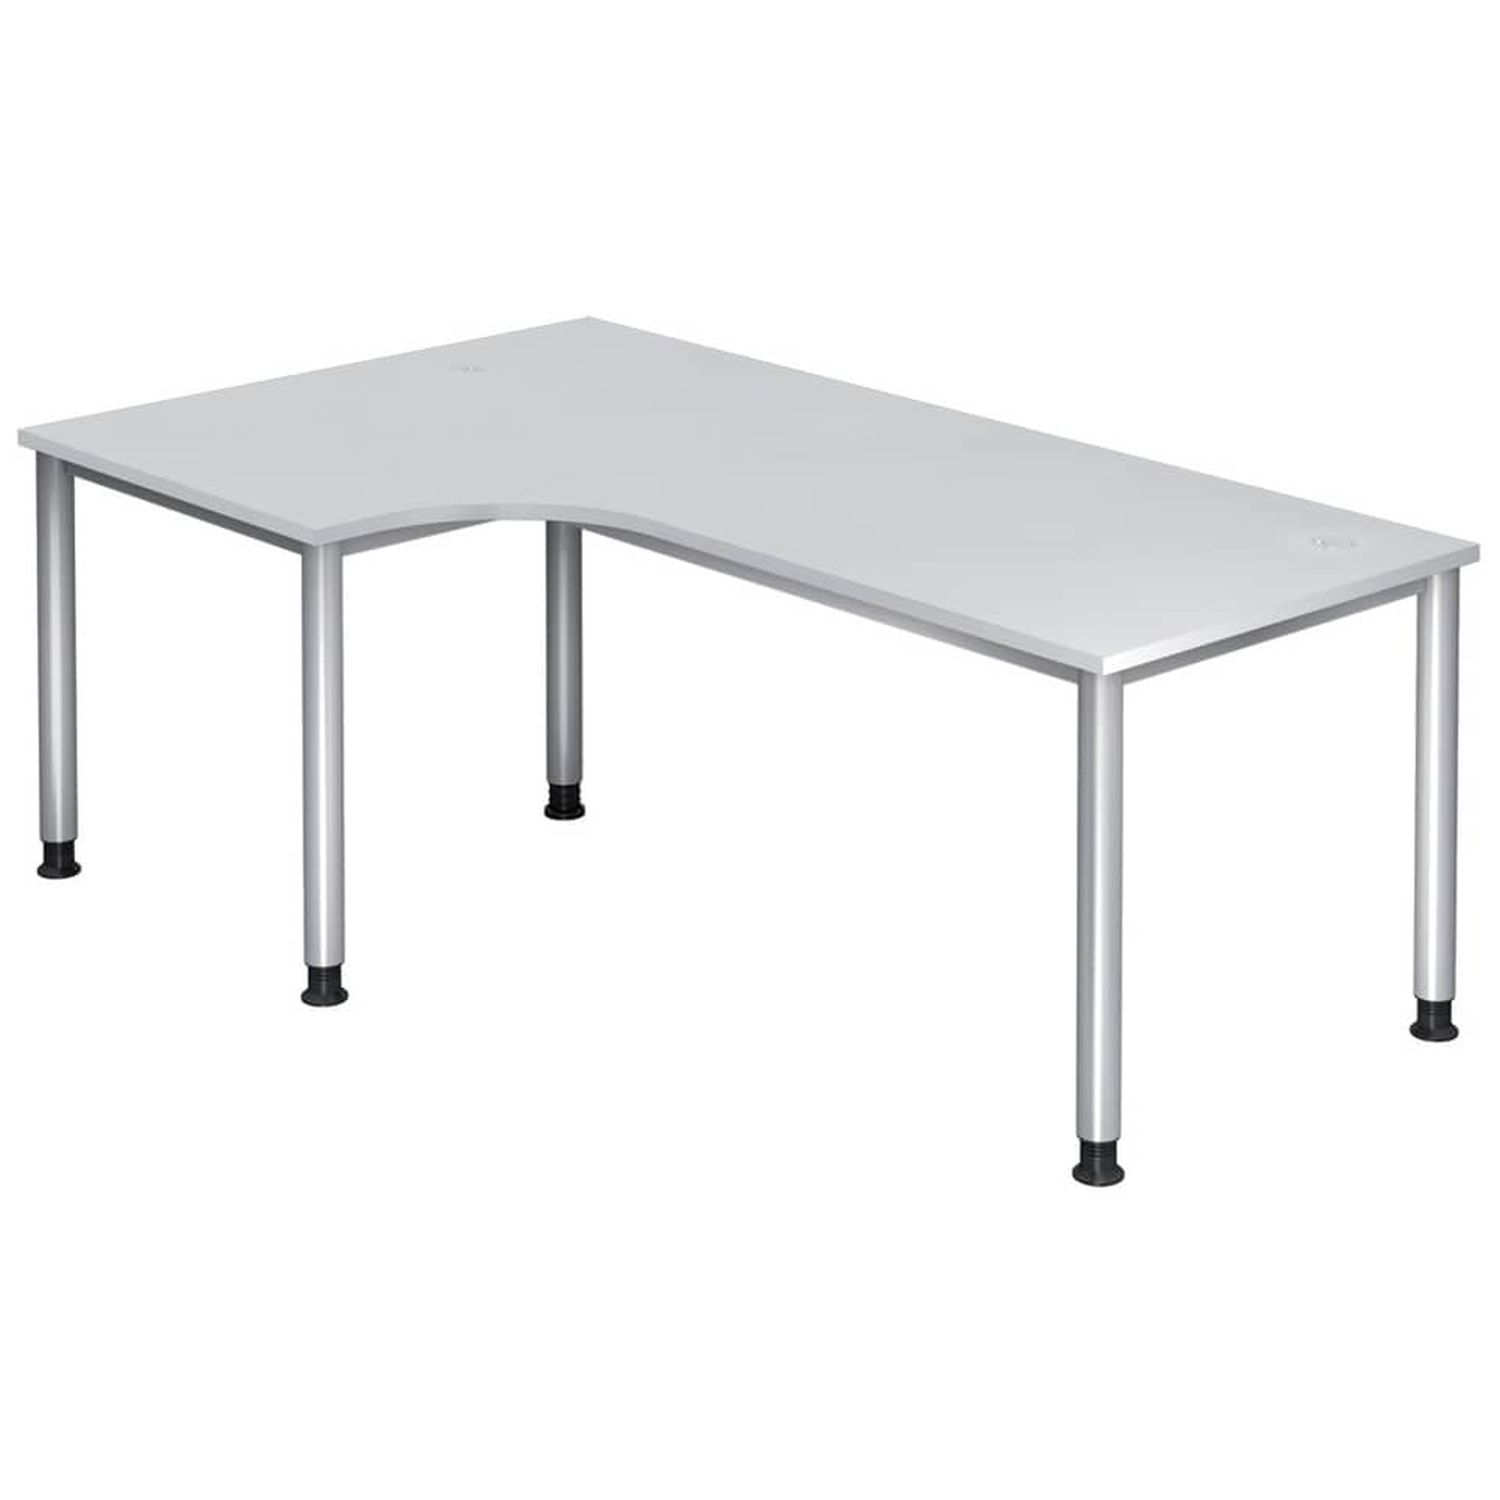 Winkeltisch 4-Fuß-Gestell rund -200 x 68-76 - 120 cm, höhenverstellbar, Winkel 90°, Weiß/Silber, mit Montageservice